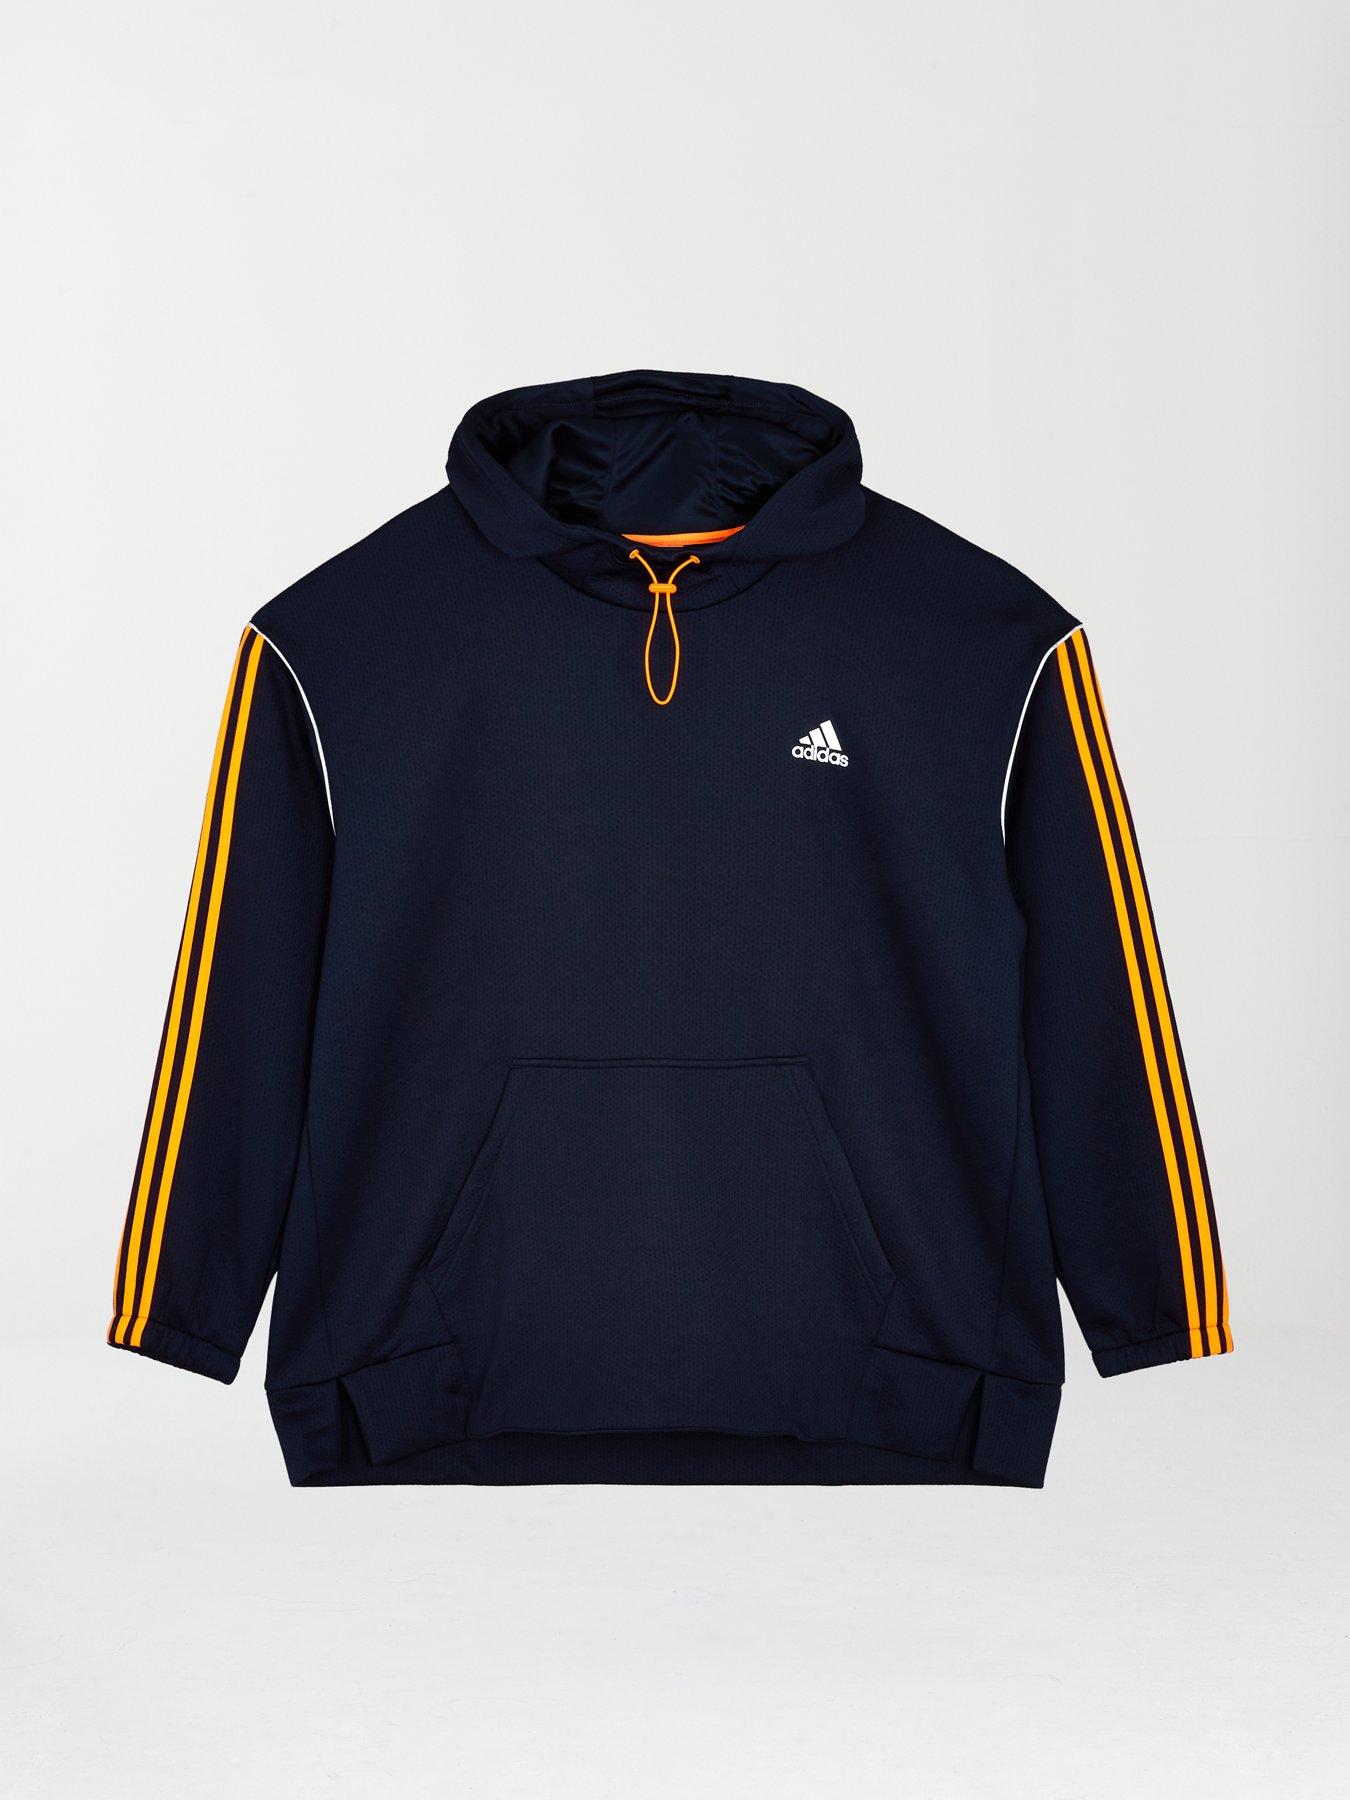 4XL | Adidas | Hoodies \u0026 sweatshirts 